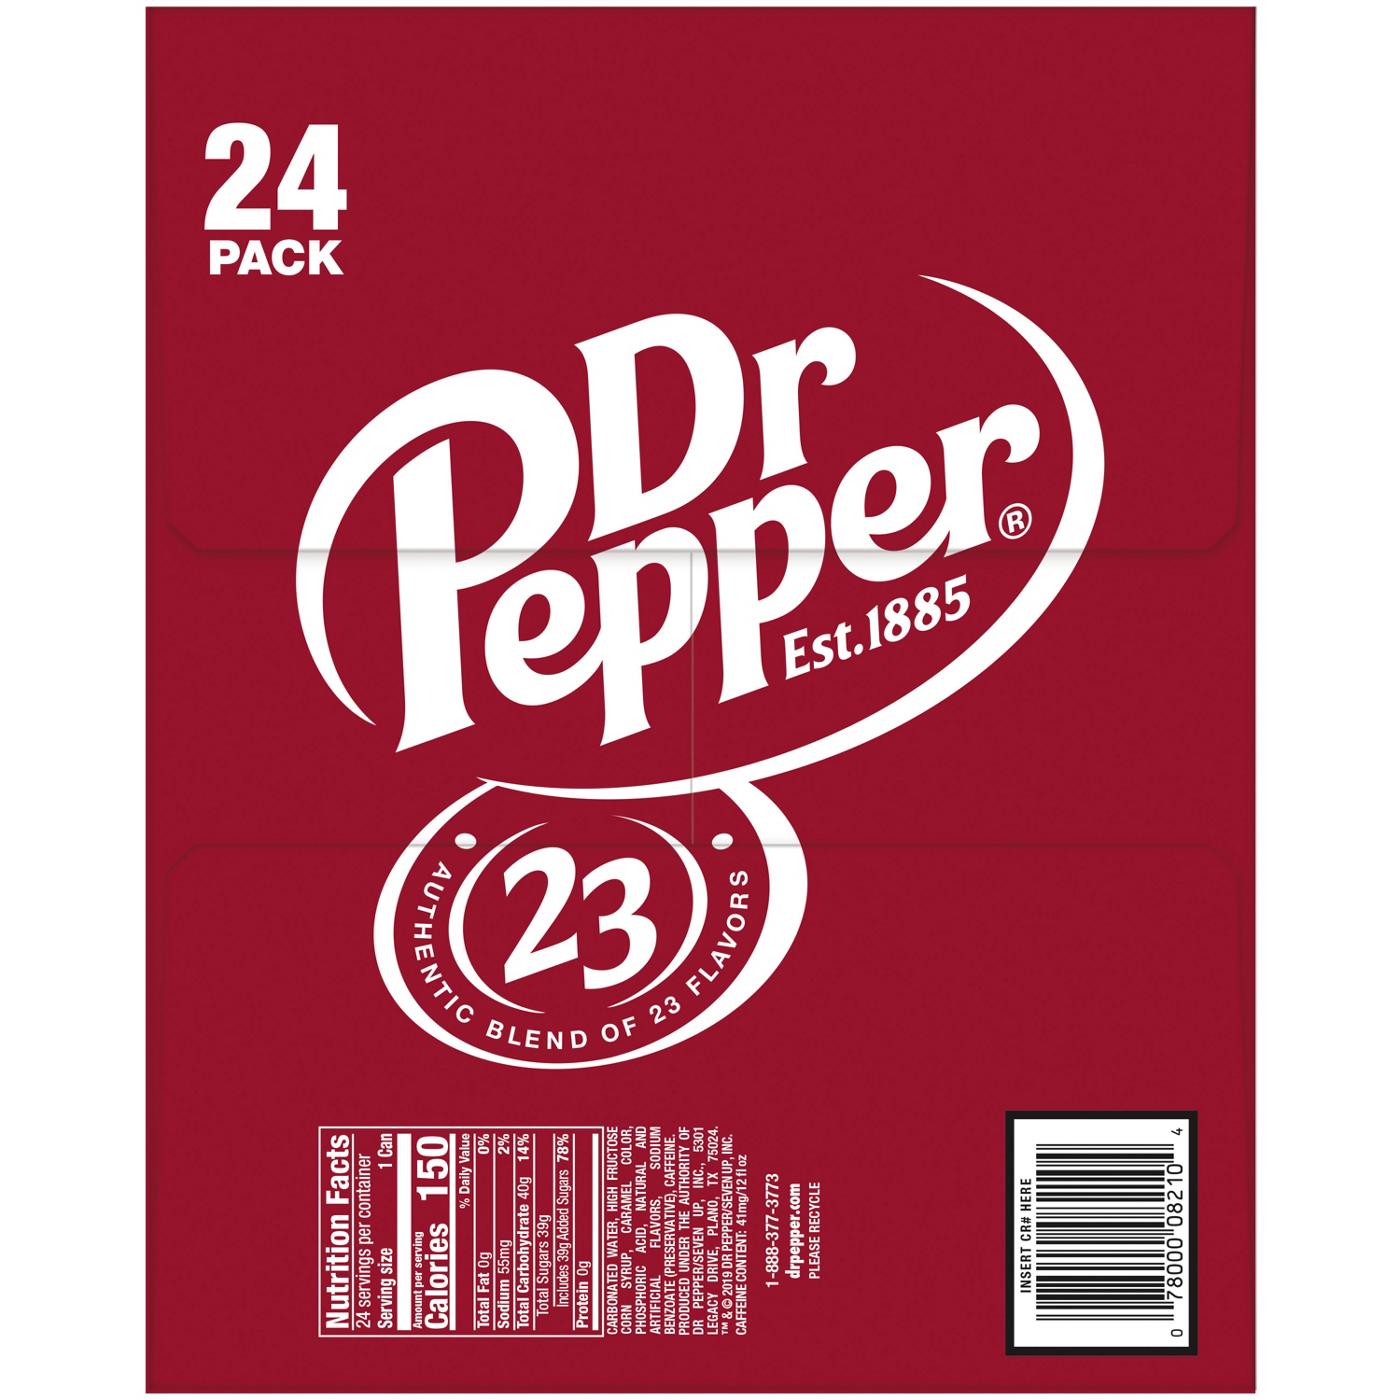 Dr Pepper Soda 12 oz Cans - Shop Soda at H-E-B